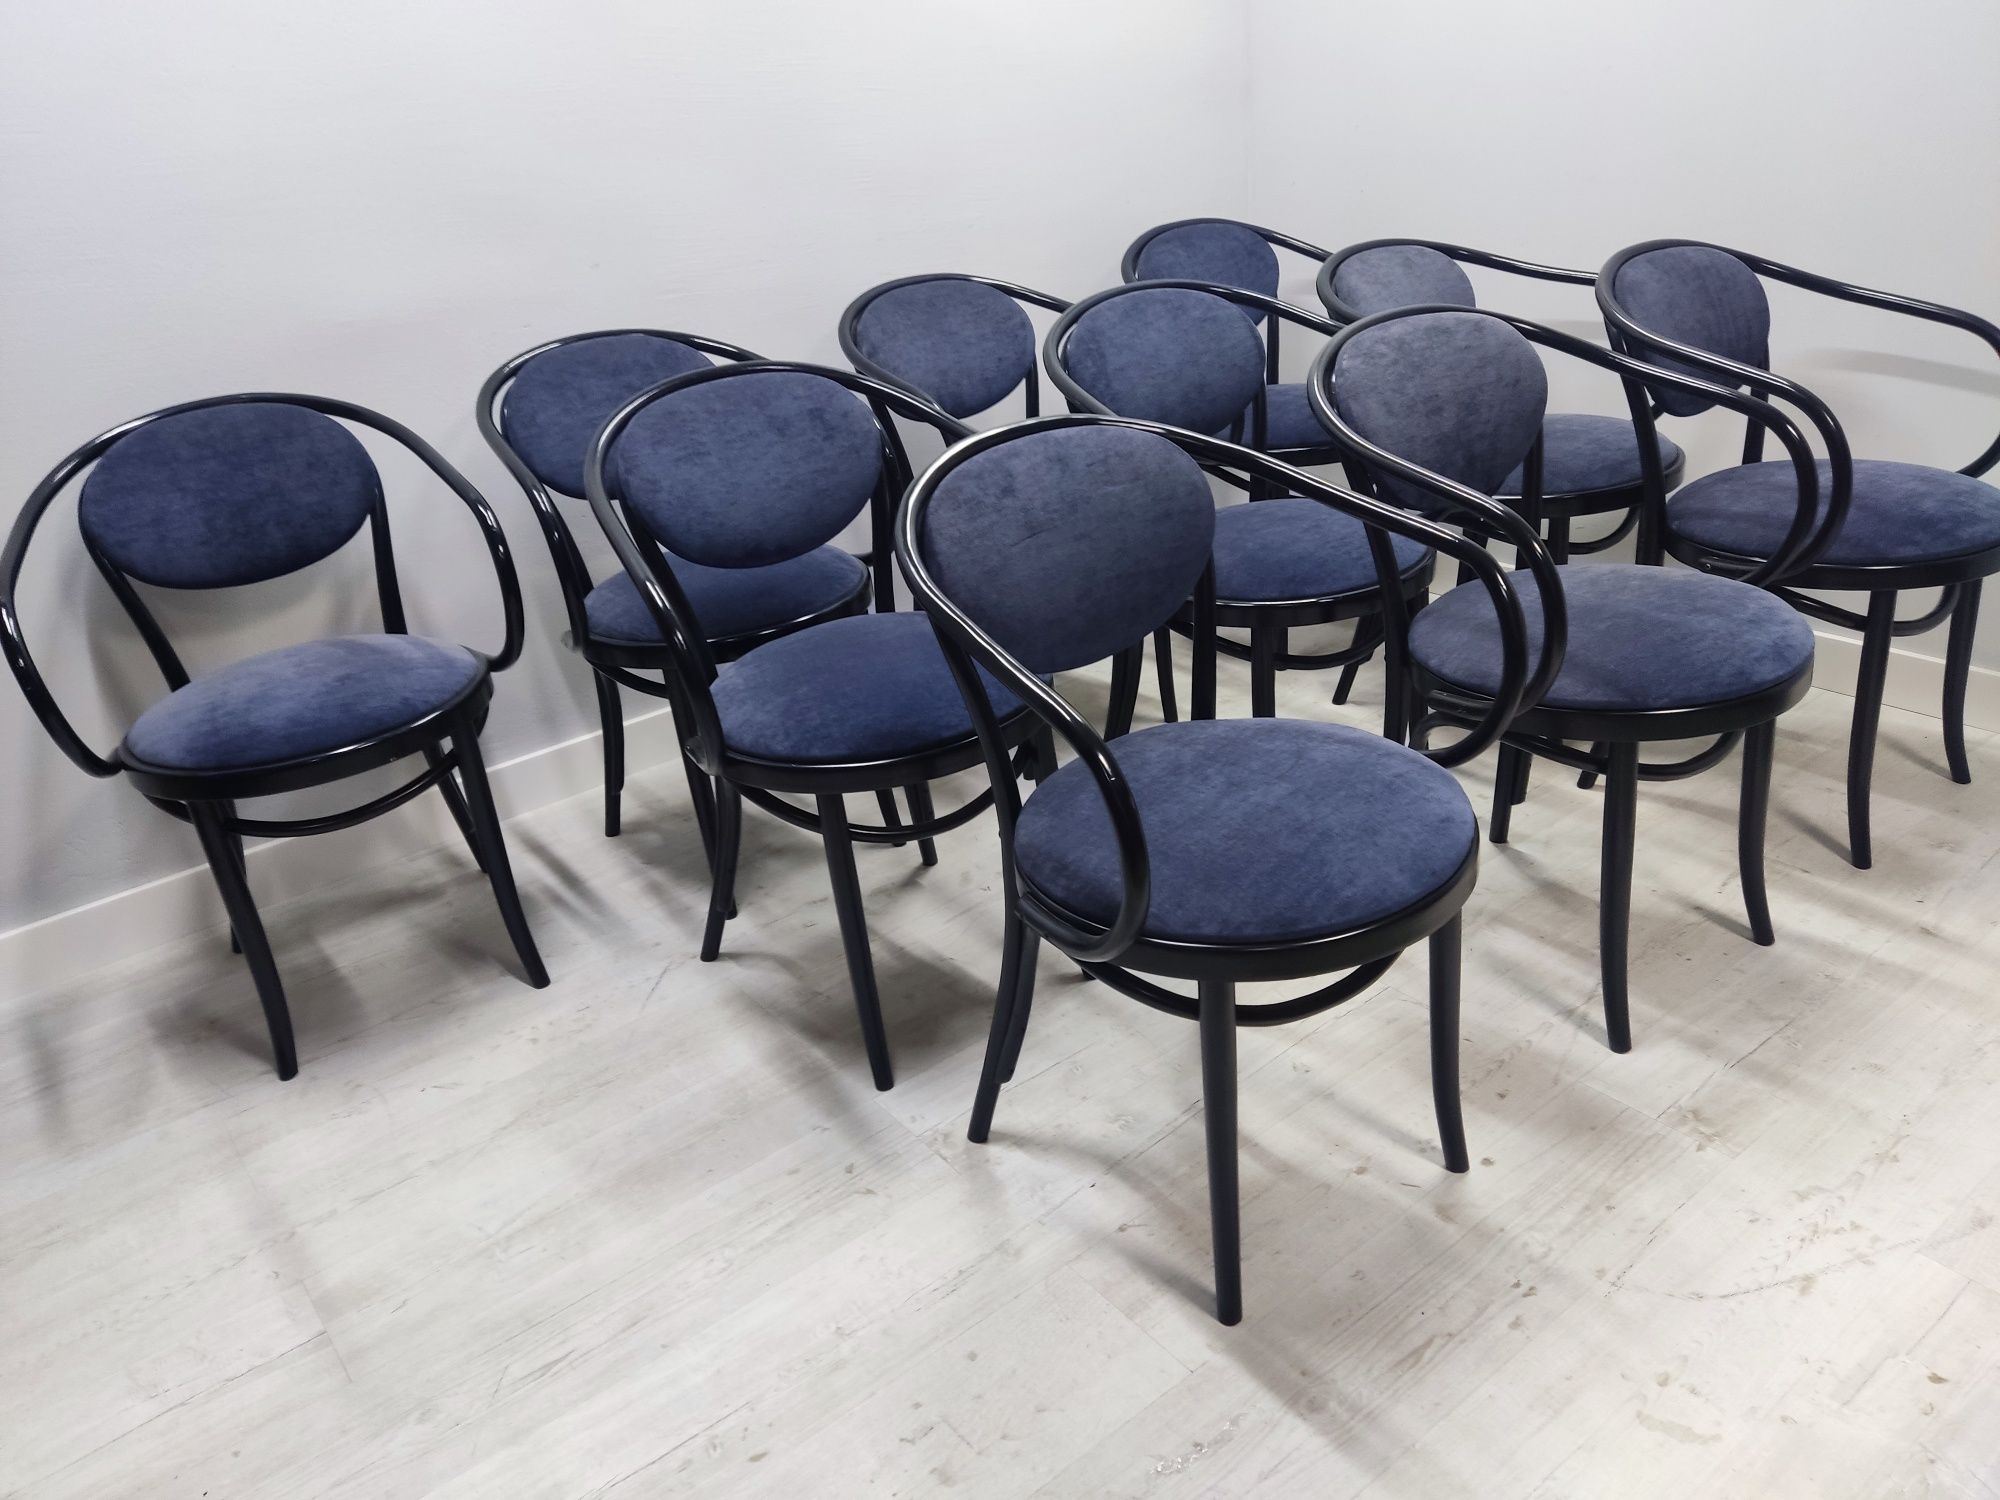 Fotel krzesł czarne B-9 Fameg Radomsko dostępne 10szt okazja